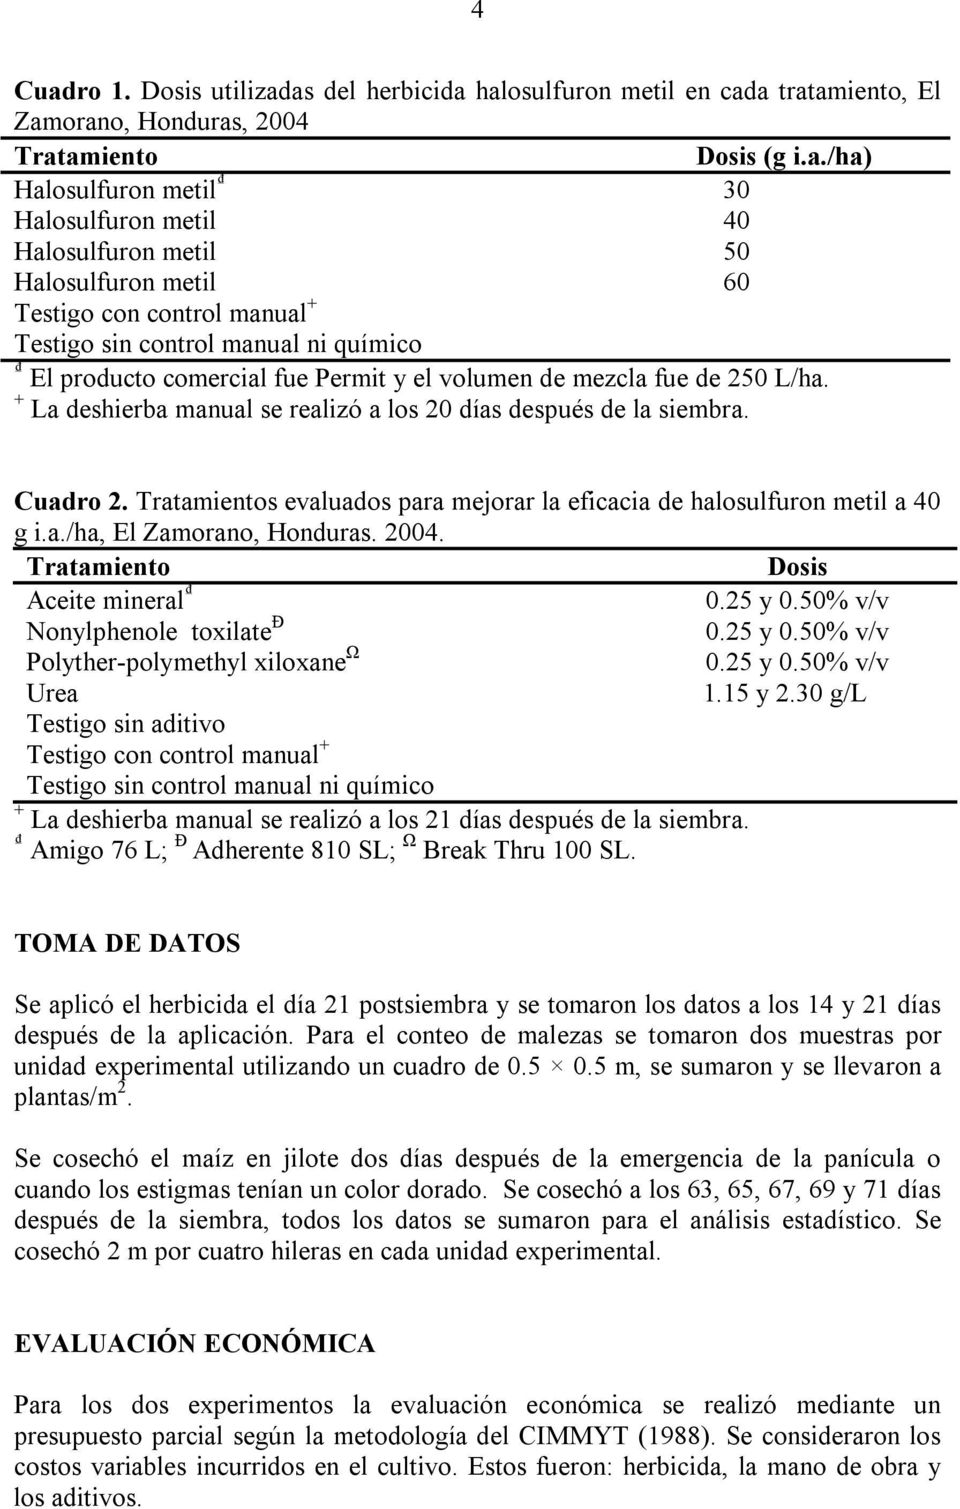 as del herbicida halosulfuron metil en cada tratamiento, El Zamorano, Honduras, 2004 Tratamiento Dosis (g i.a./ha) Halosulfuron metil 30 Halosulfuron metil 40 Halosulfuron metil 50 Halosulfuron metil